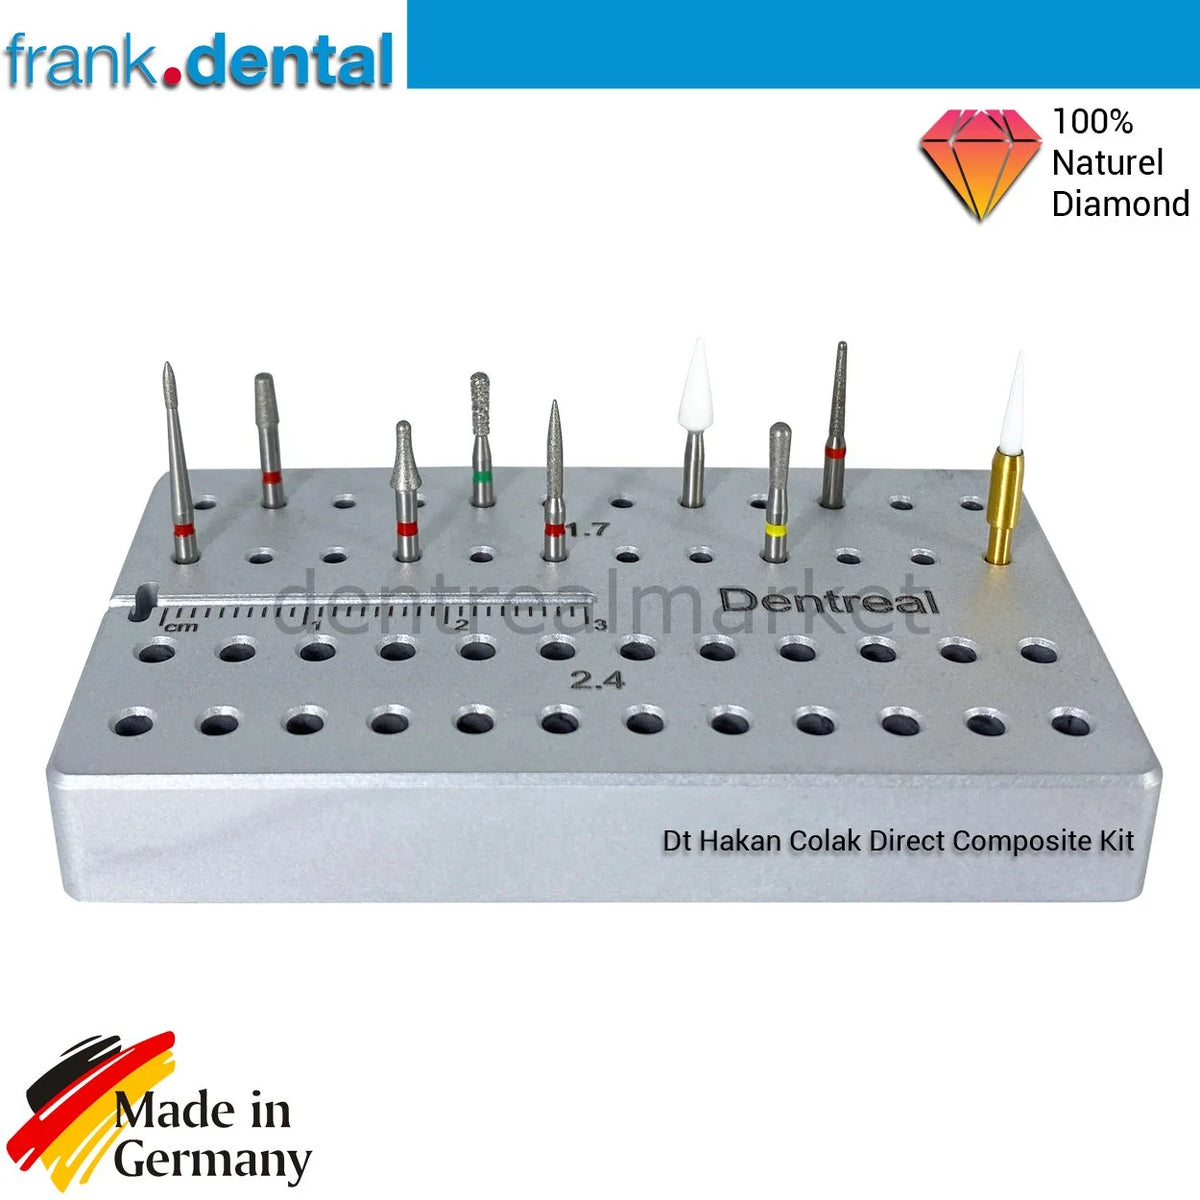 DentrealStore - Frank Dental Dr. Hakan Çolak Direct Composite Bur Set - Natural Diamond Burs Set